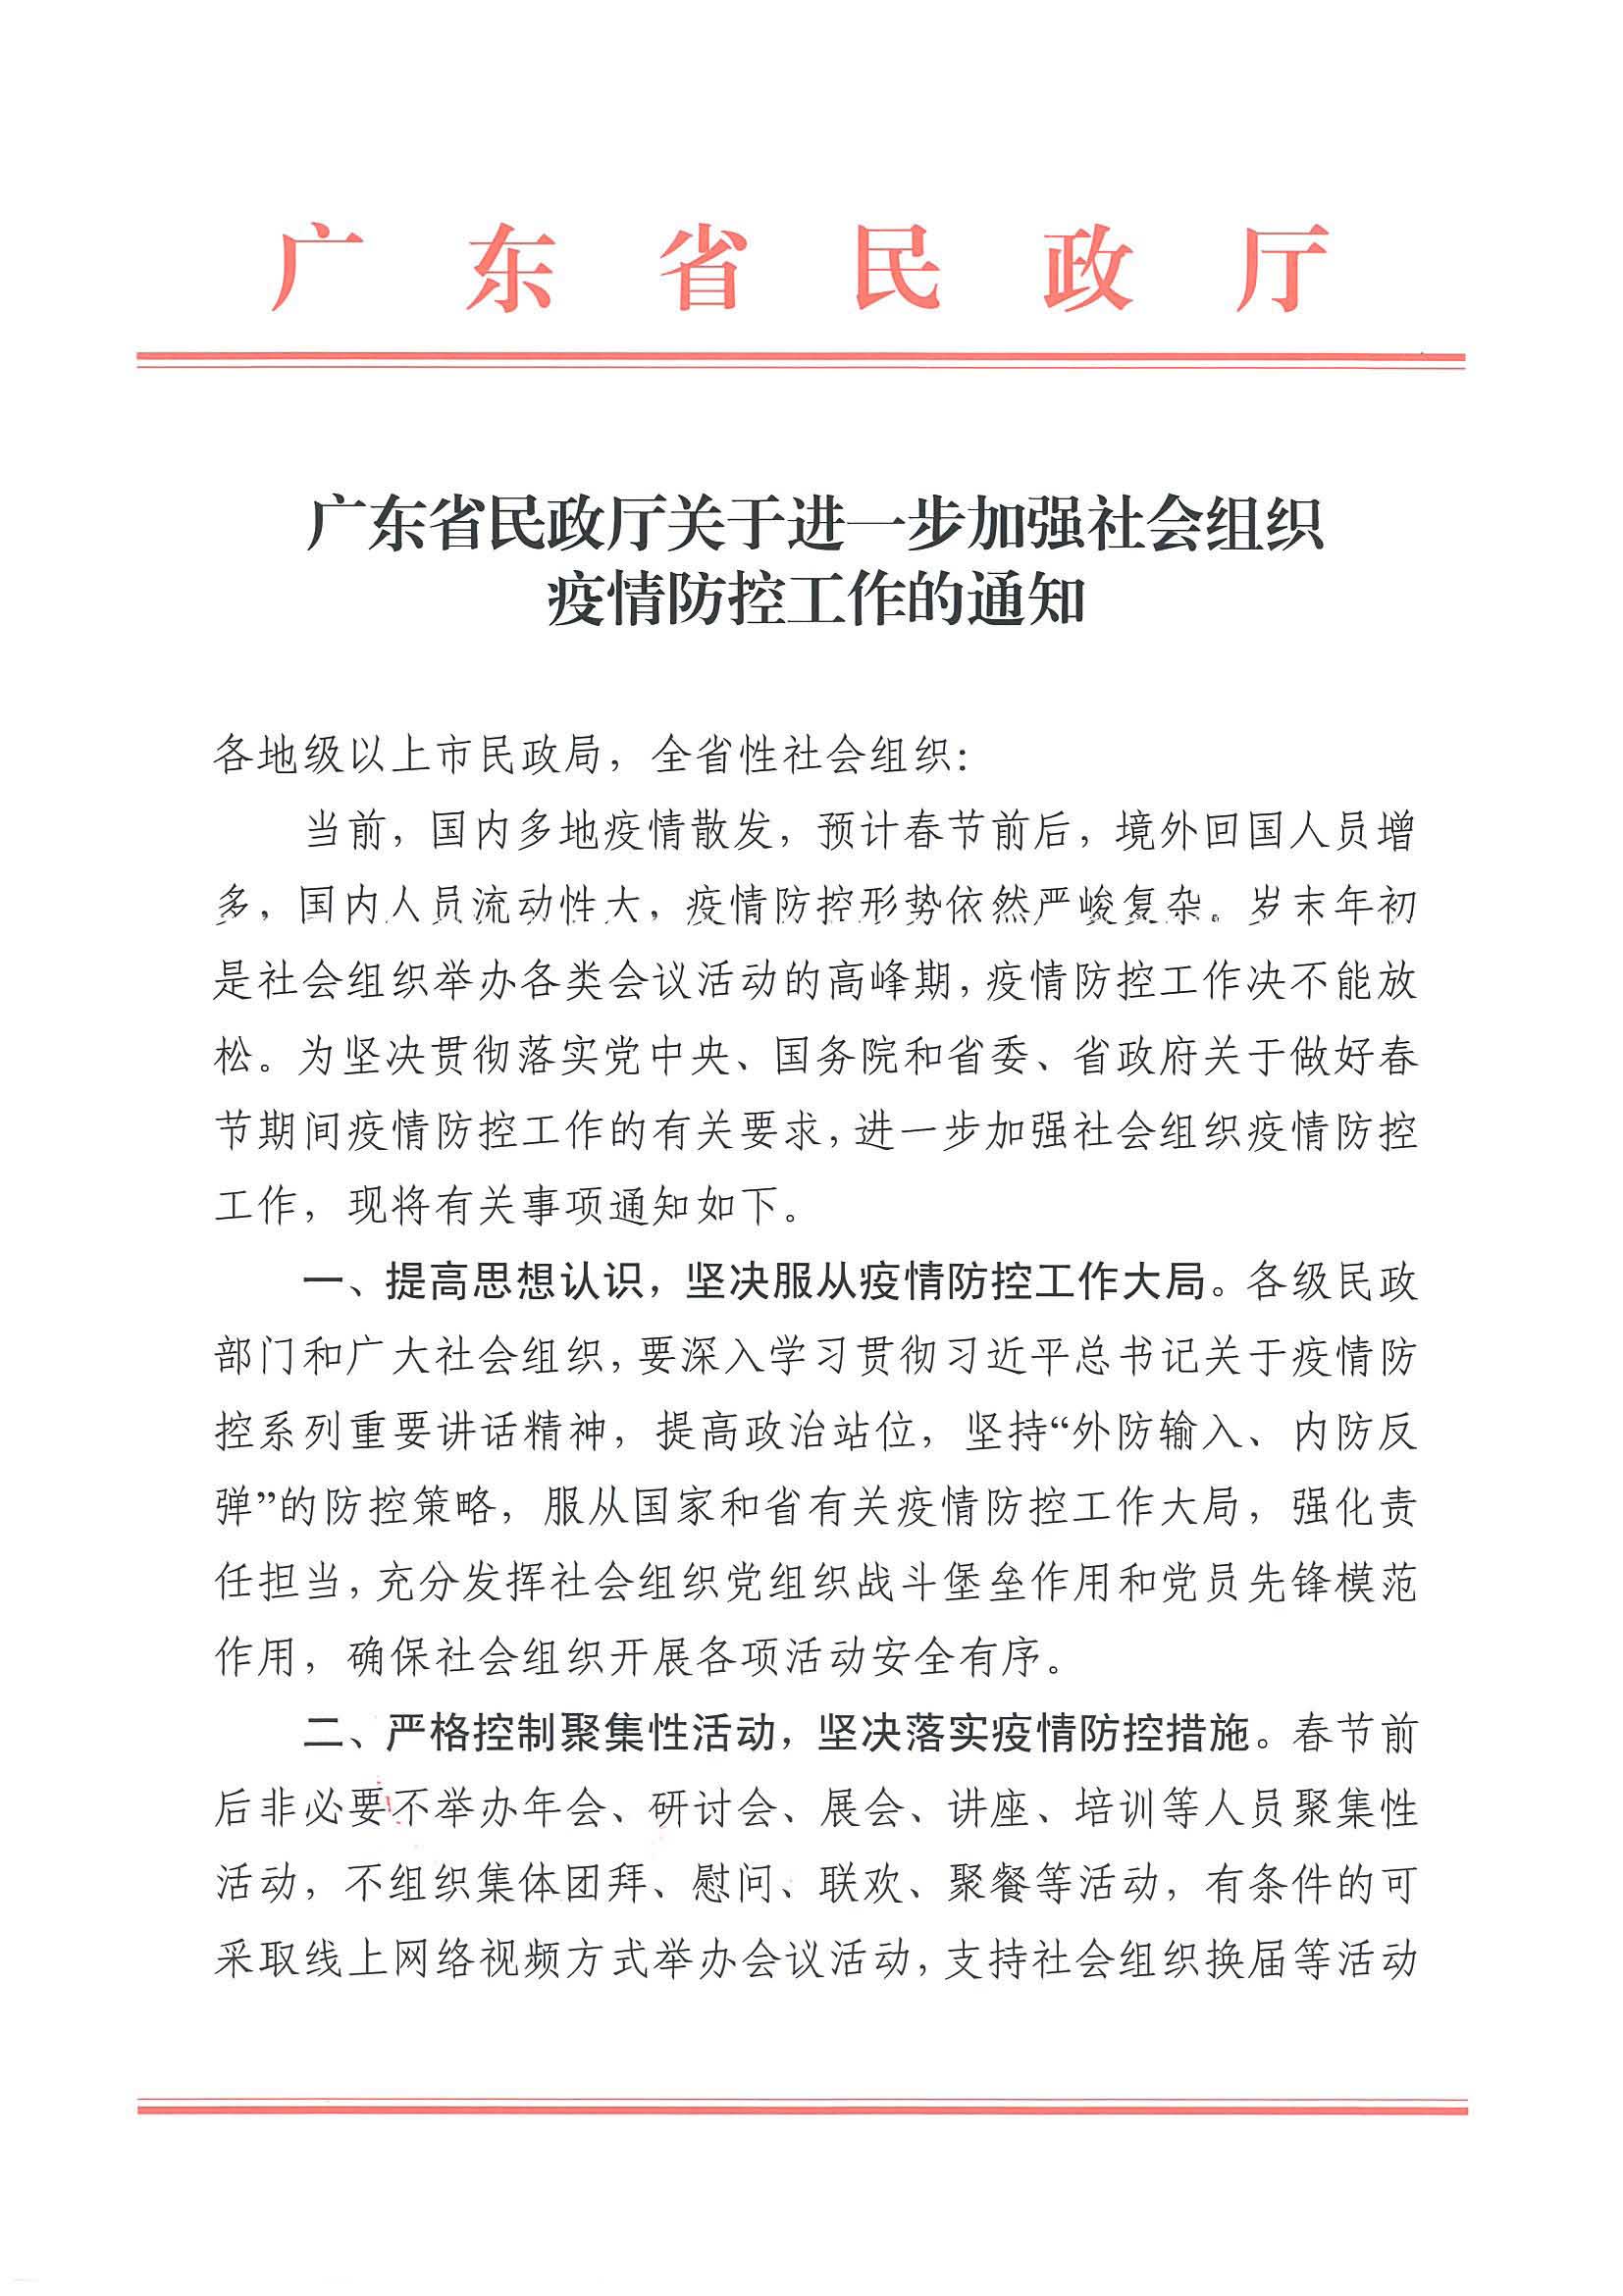 广东省民政厅关于进一步加强社会组织疫情防控工作的通知(图1)